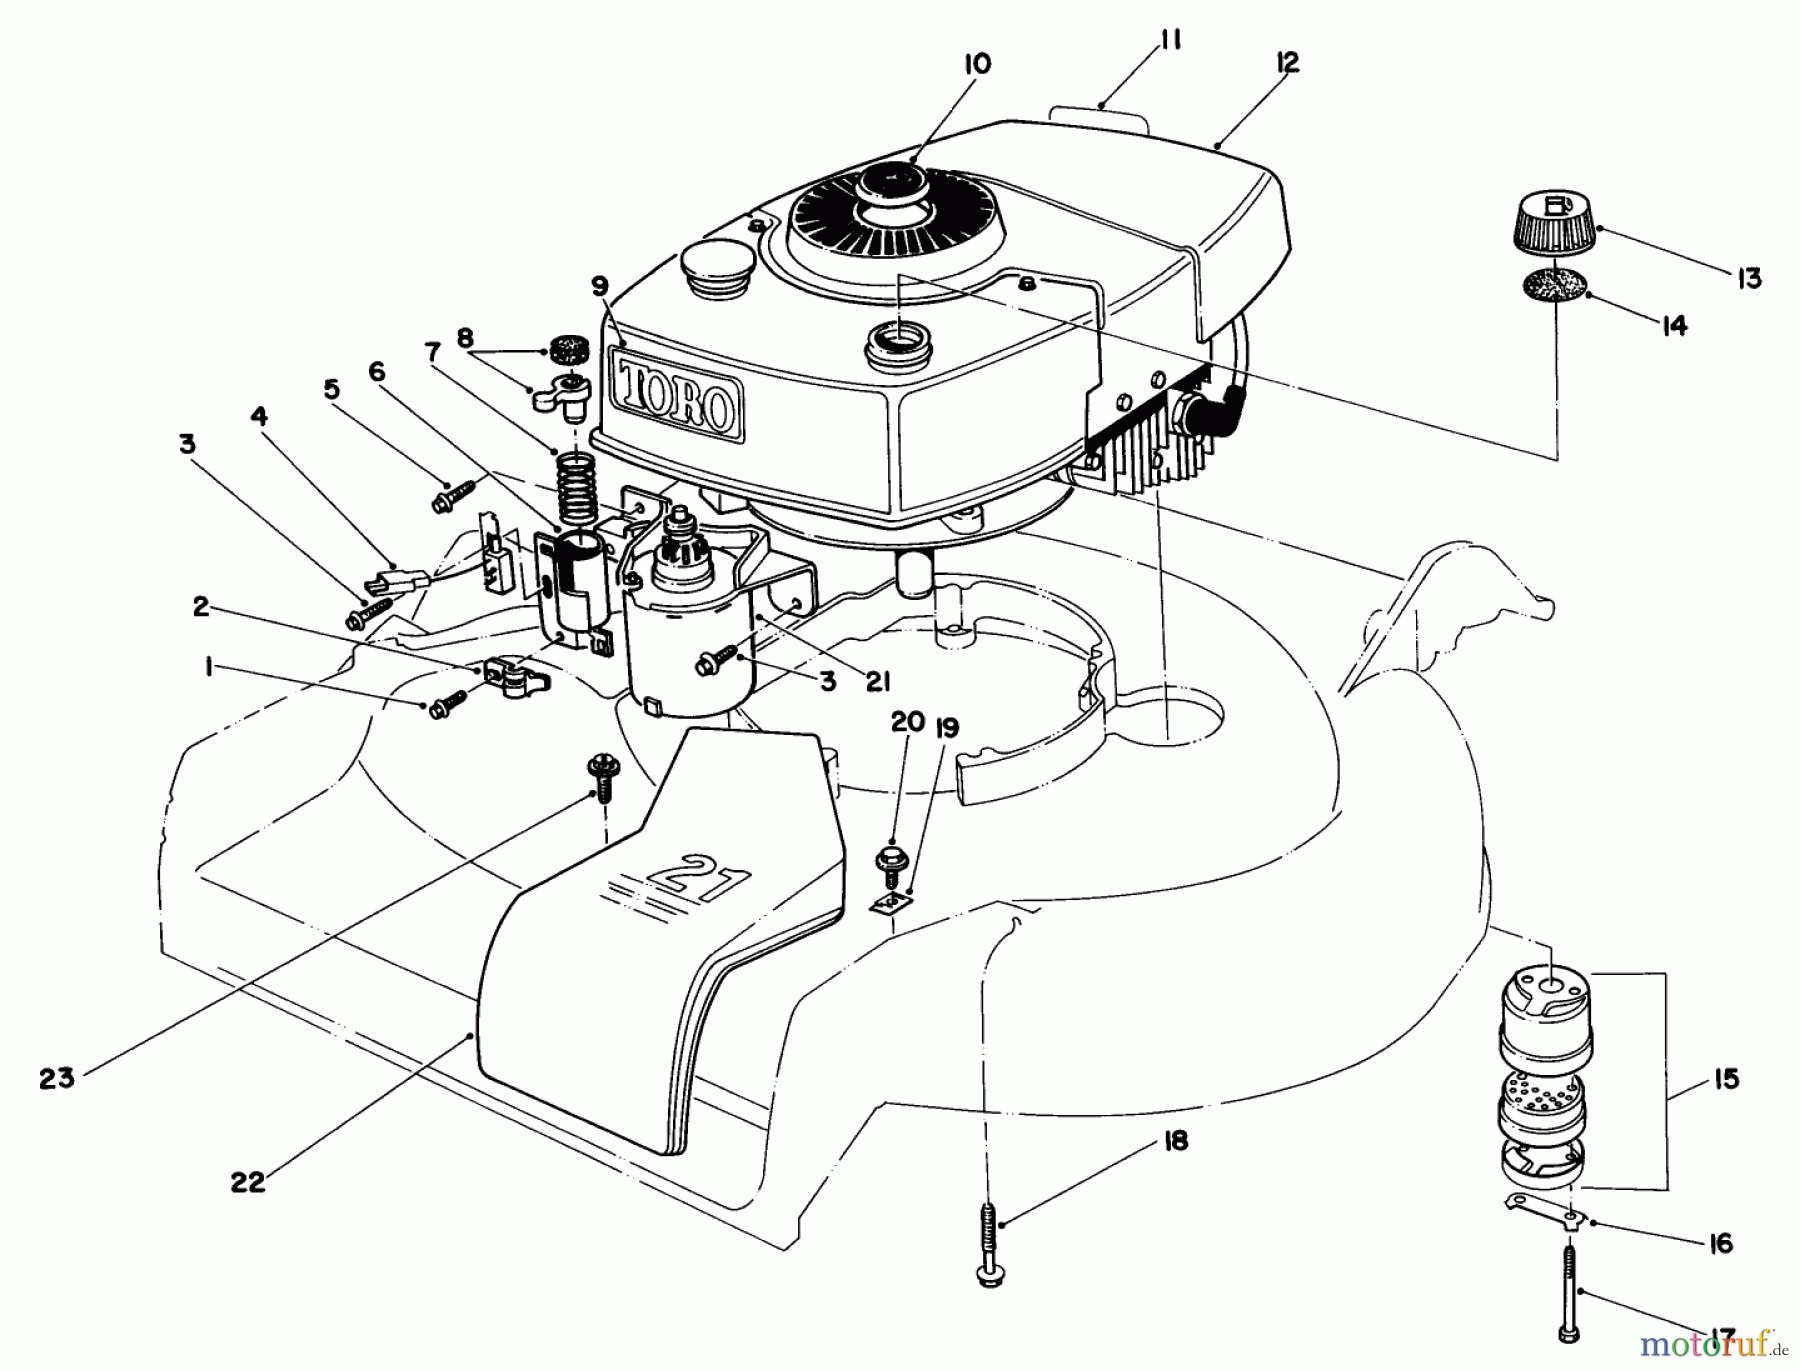  Toro Neu Mowers, Walk-Behind Seite 1 16793 - Toro Lawnmower, 1988 (8000001-8999999) ENGINE ASSEMBLY